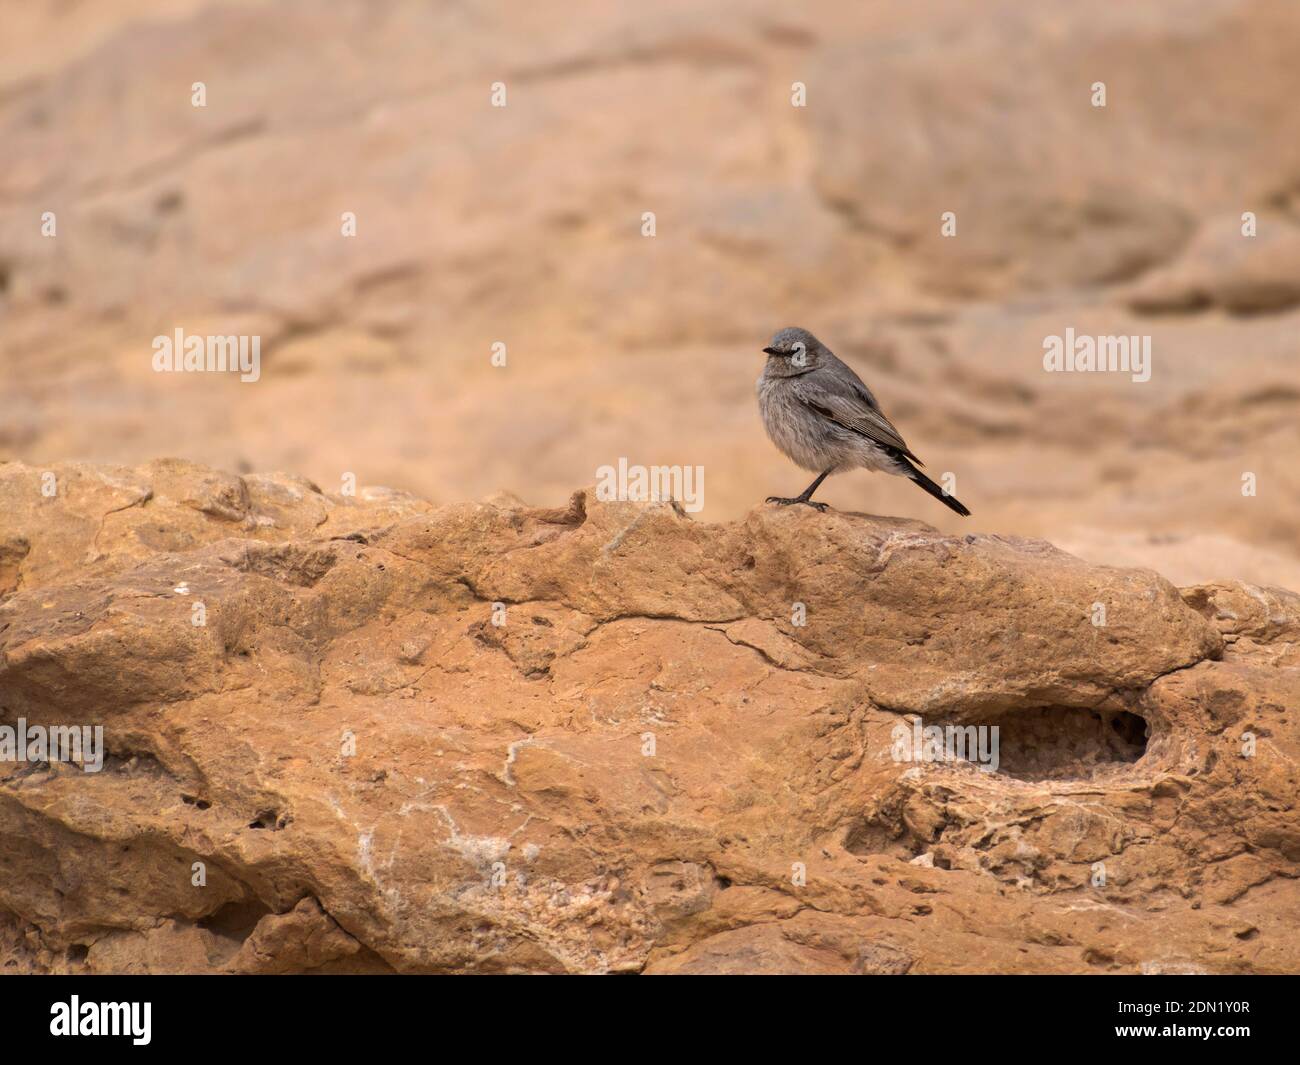 un pájaro gris oscuro de arranque negro posado sobre un naranja rojo piedra caliza en el cráter makhtesh ramon en israel con un acantilado borroso en el fondo Foto de stock